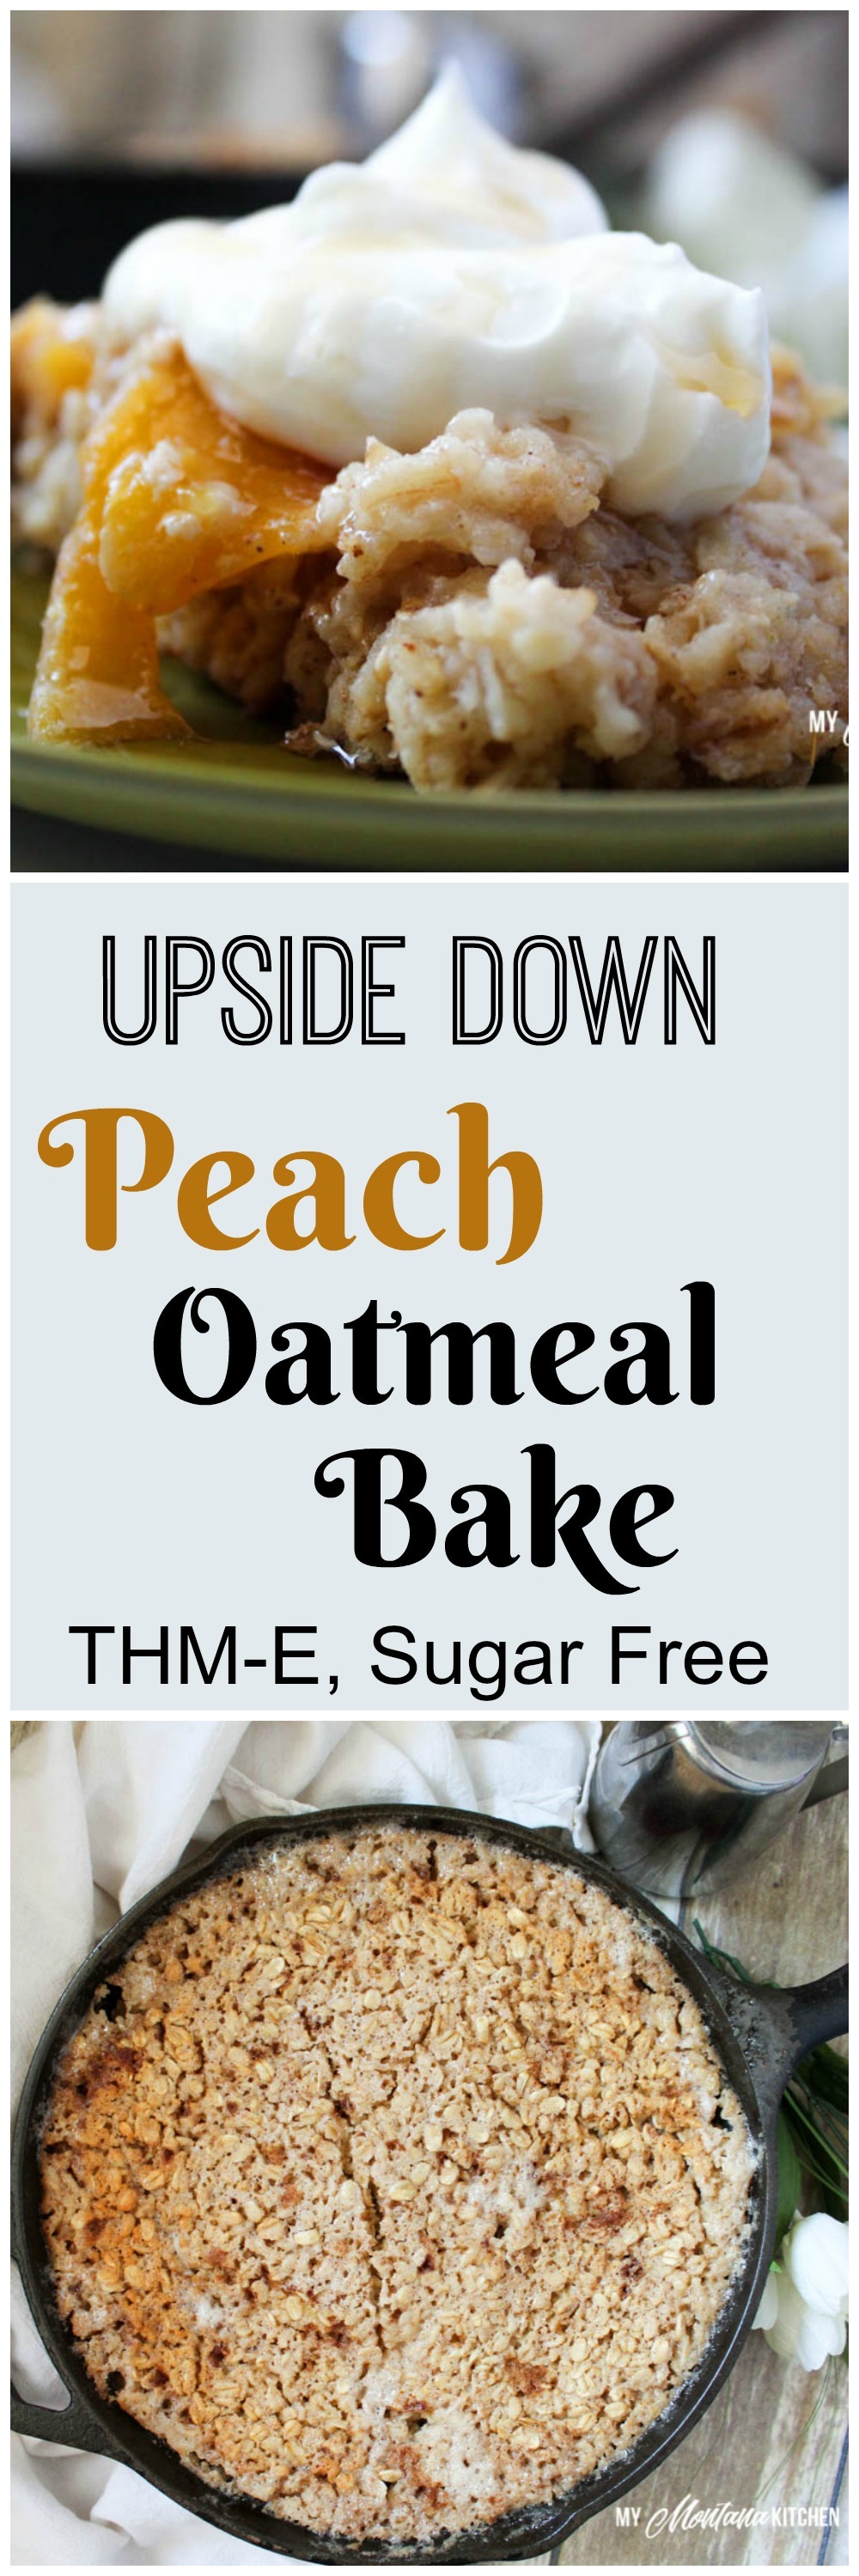 Upside Down Peach Oatmeal Bake (THM-E, Sugar Free)